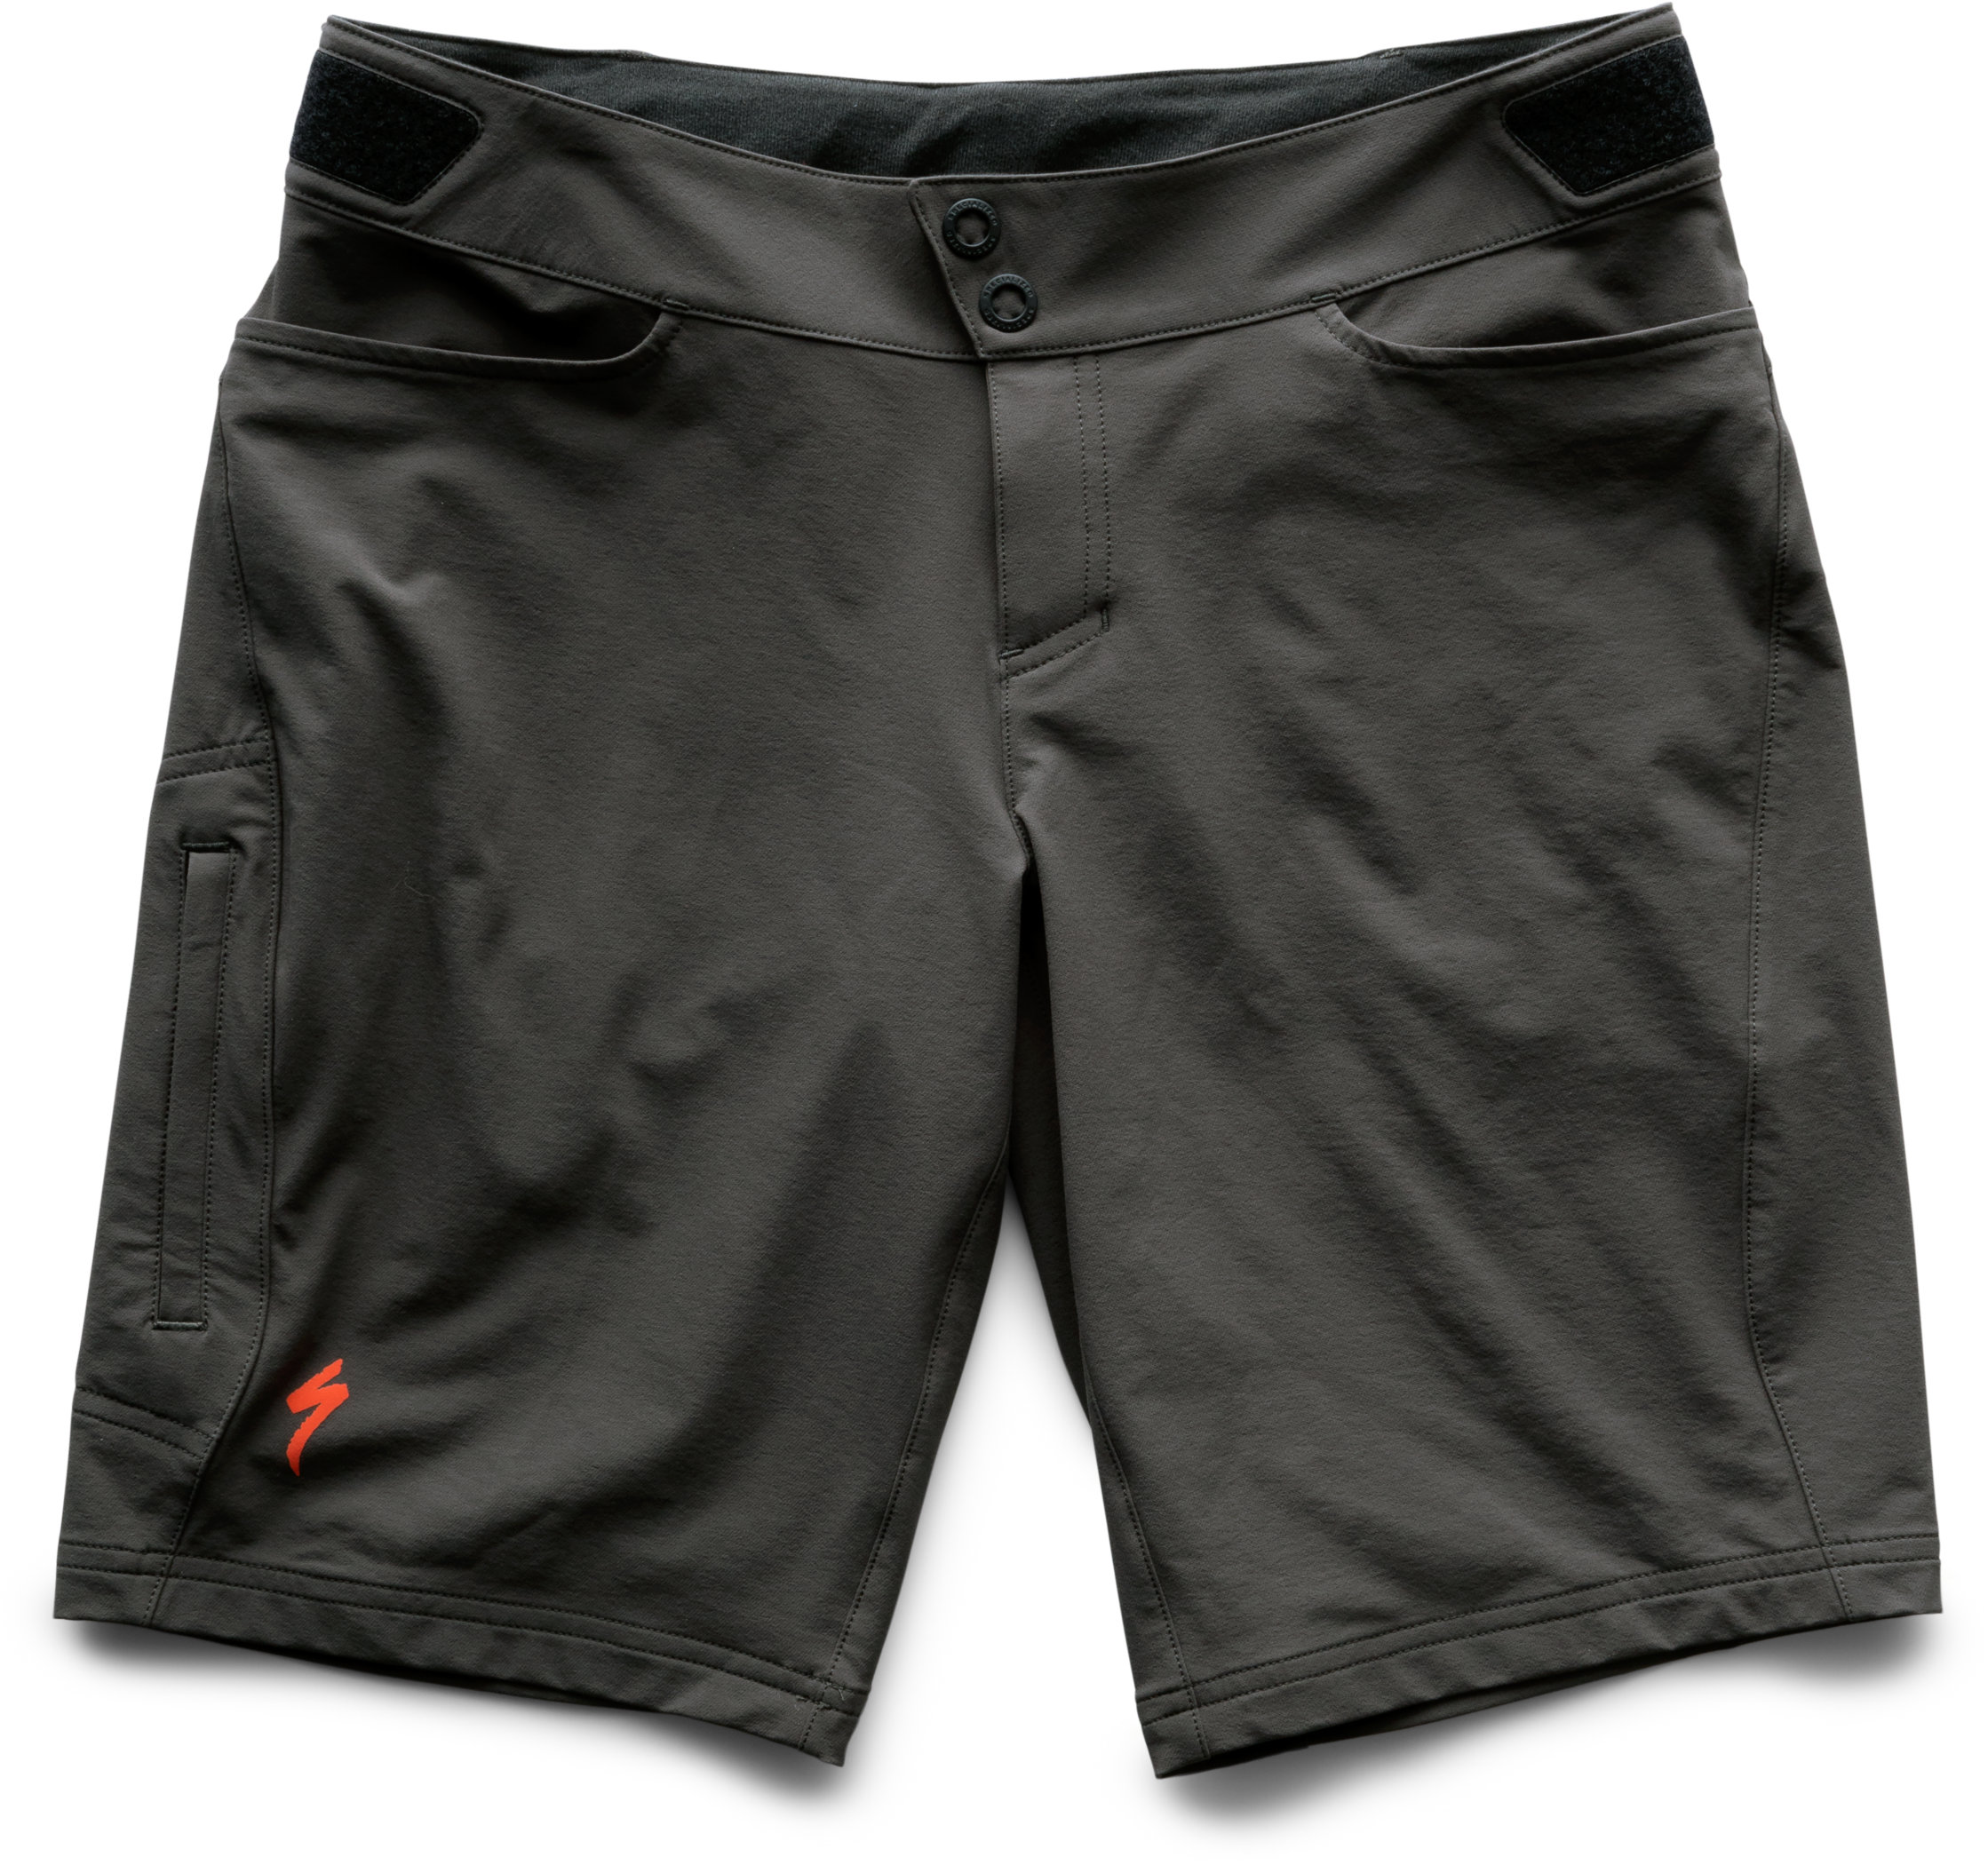 Andorra Comp Shorts | Specialized.com